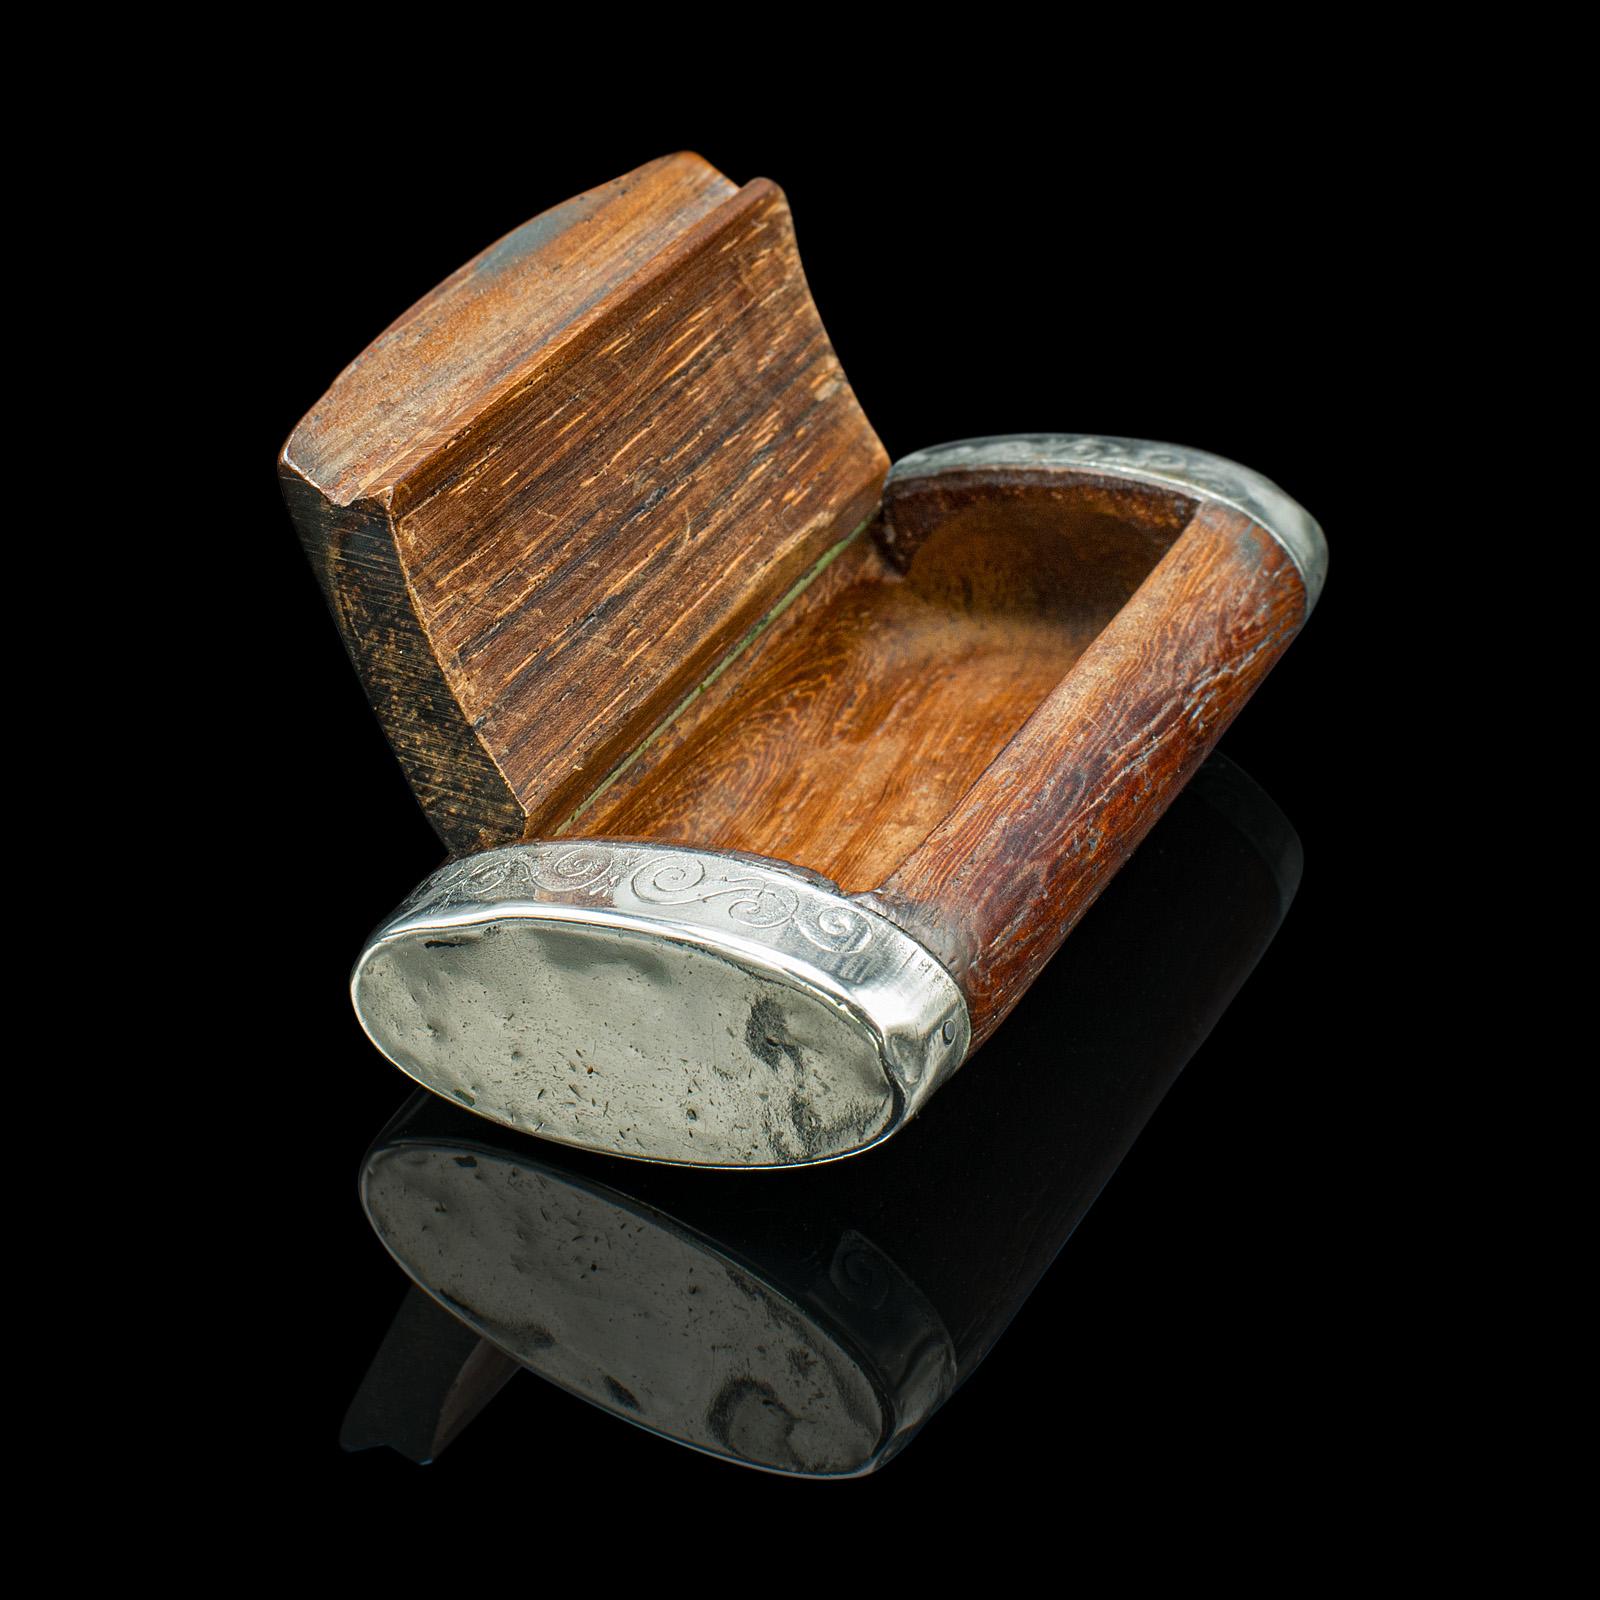 Dies ist eine kleine antike Pillendose. Französischer Taschenkoffer mit Deckel aus Nussbaumholz und Silber, aus der spätviktorianischen Zeit, um 1900.

Charmante kleine Holzbox, ideal für die Manteltasche
Zeigt eine wünschenswerte gealterte Patina